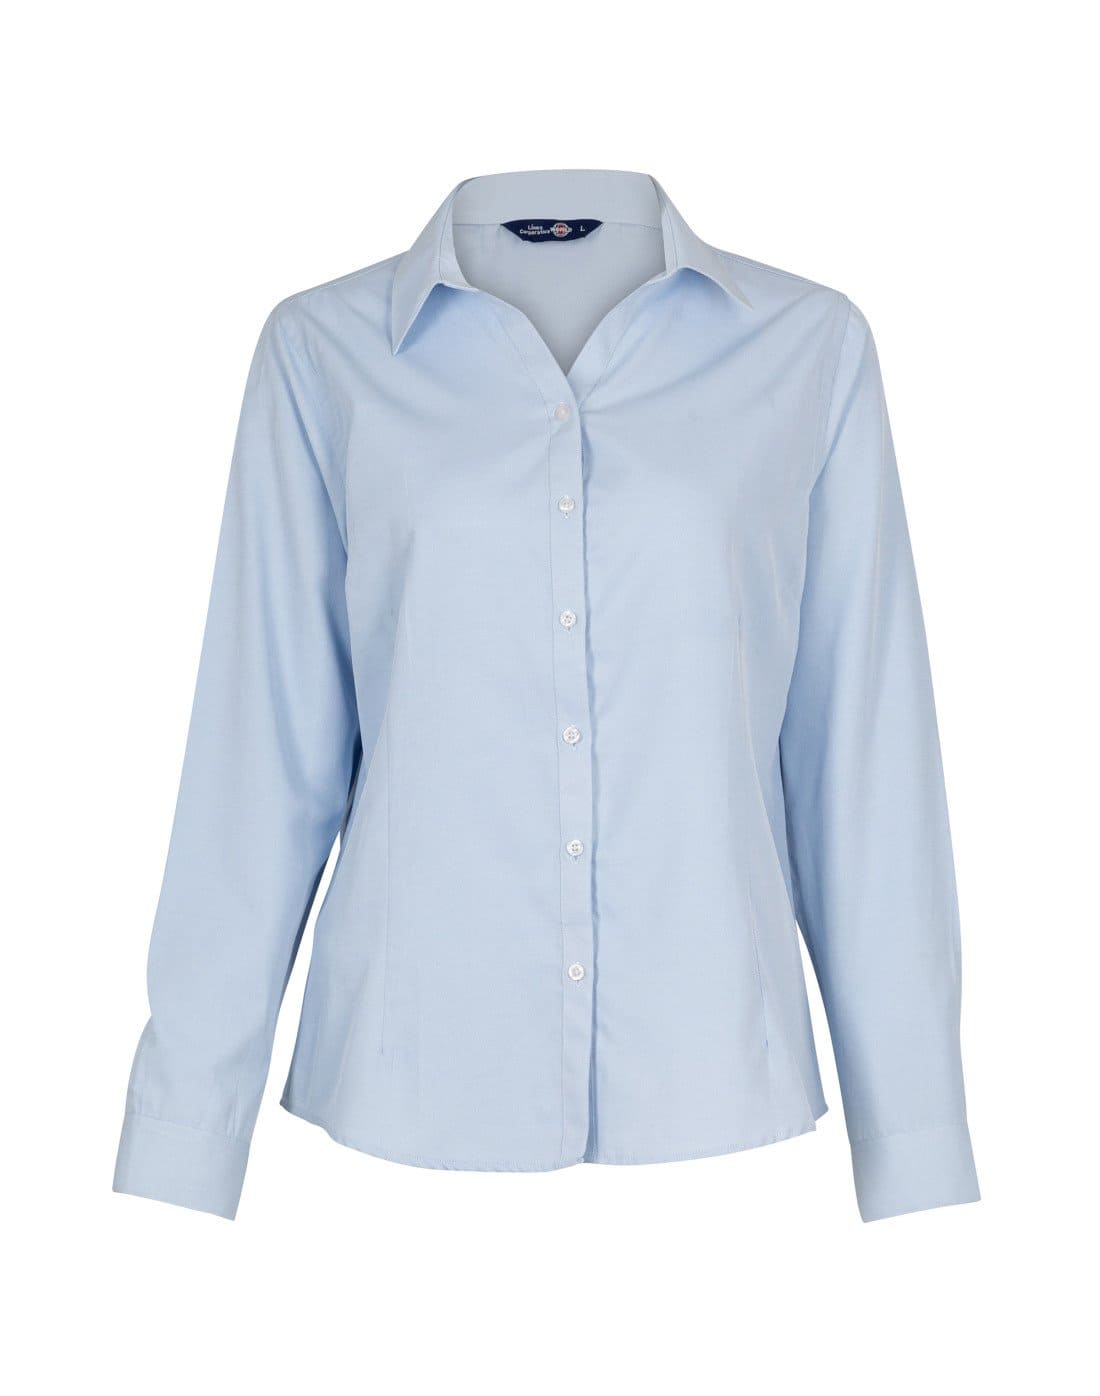 Blusa Oxford Light de TEAMGRAFF, elegancia y ligereza para el día a día, ideal para profesionales y ocasiones casuales